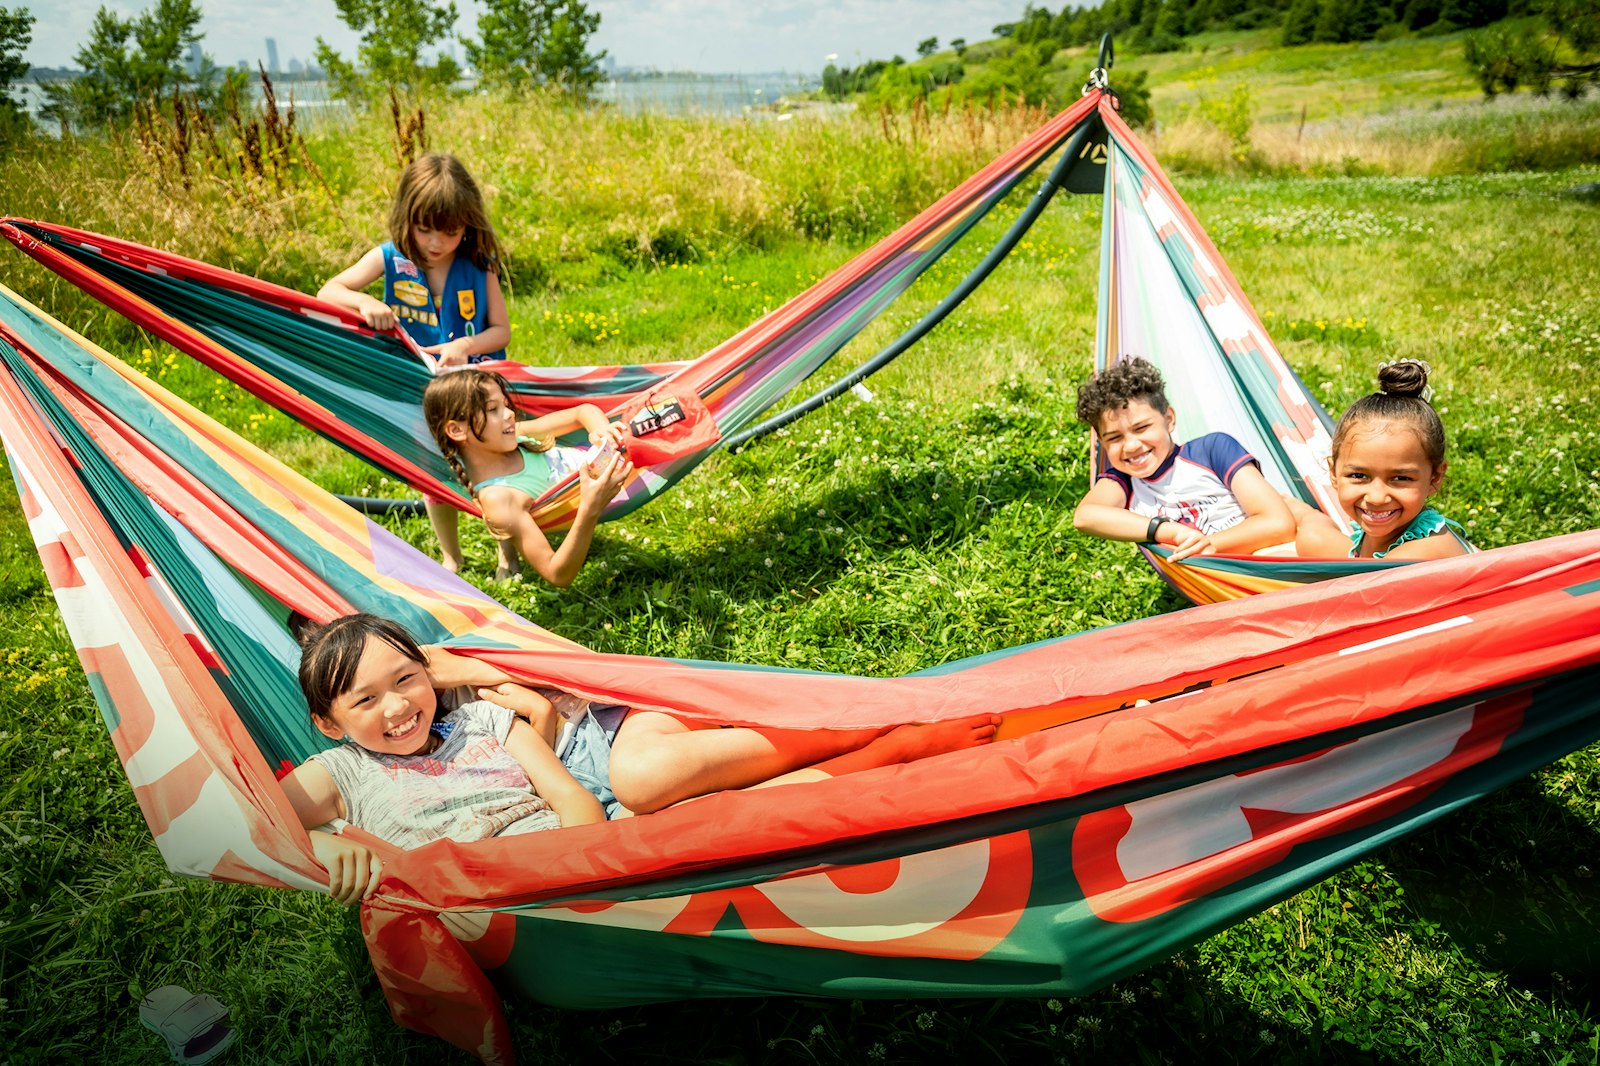 Kids lounge in hammocks